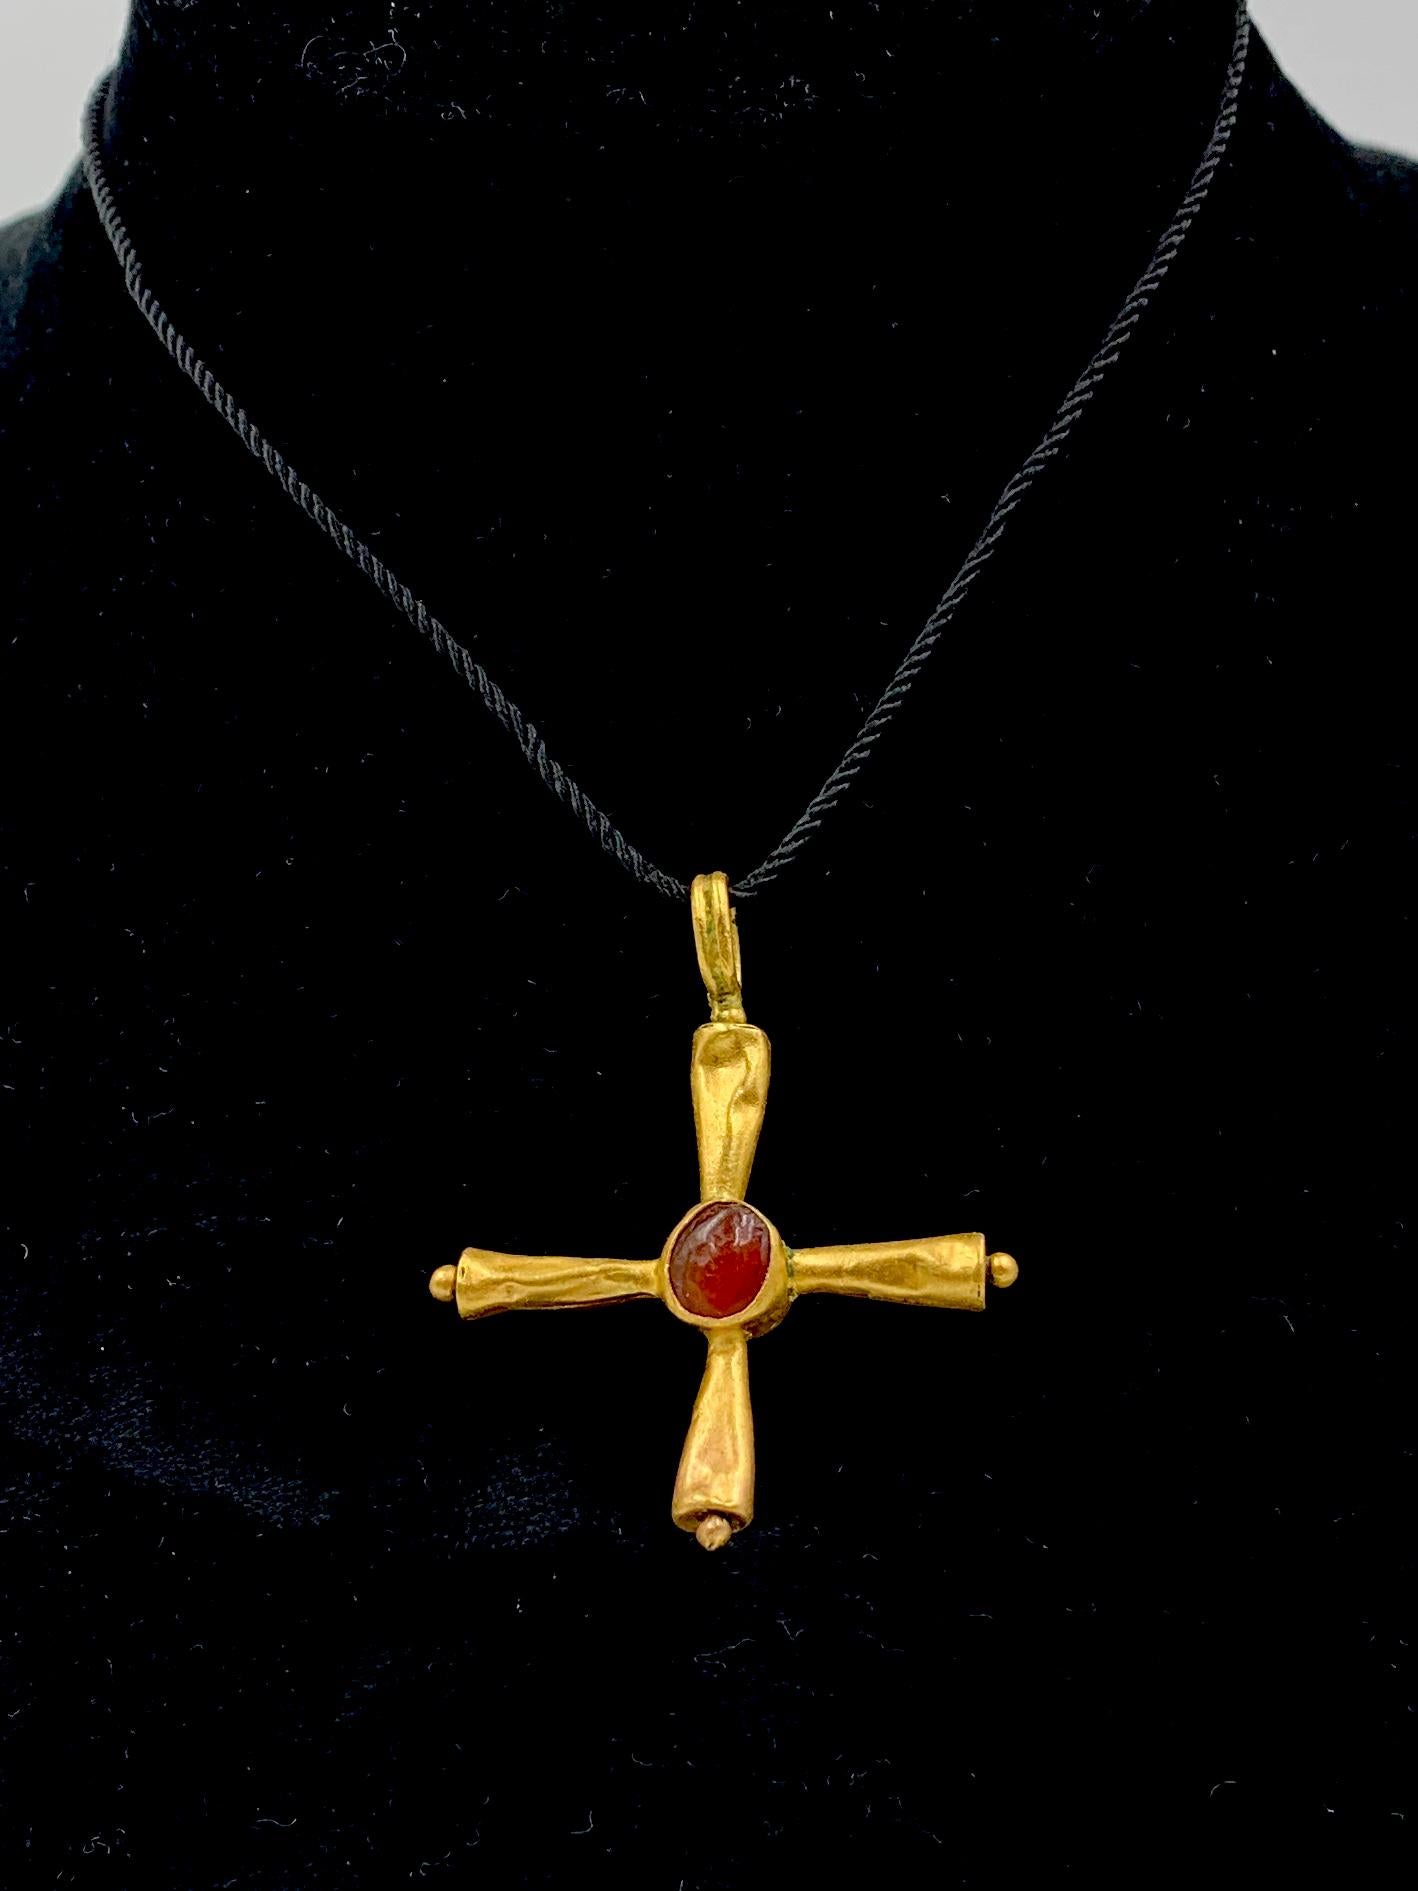 La forme de cette croix rare est connue sous le nom de croix de Thor ou de croix de Cuthbert, un chrétien celte associé au royaume de Northumbrie et au sud de l'Écosse. Après sa mort, Rever est devenu le saint le plus révéré du nord de l'Angleterre.